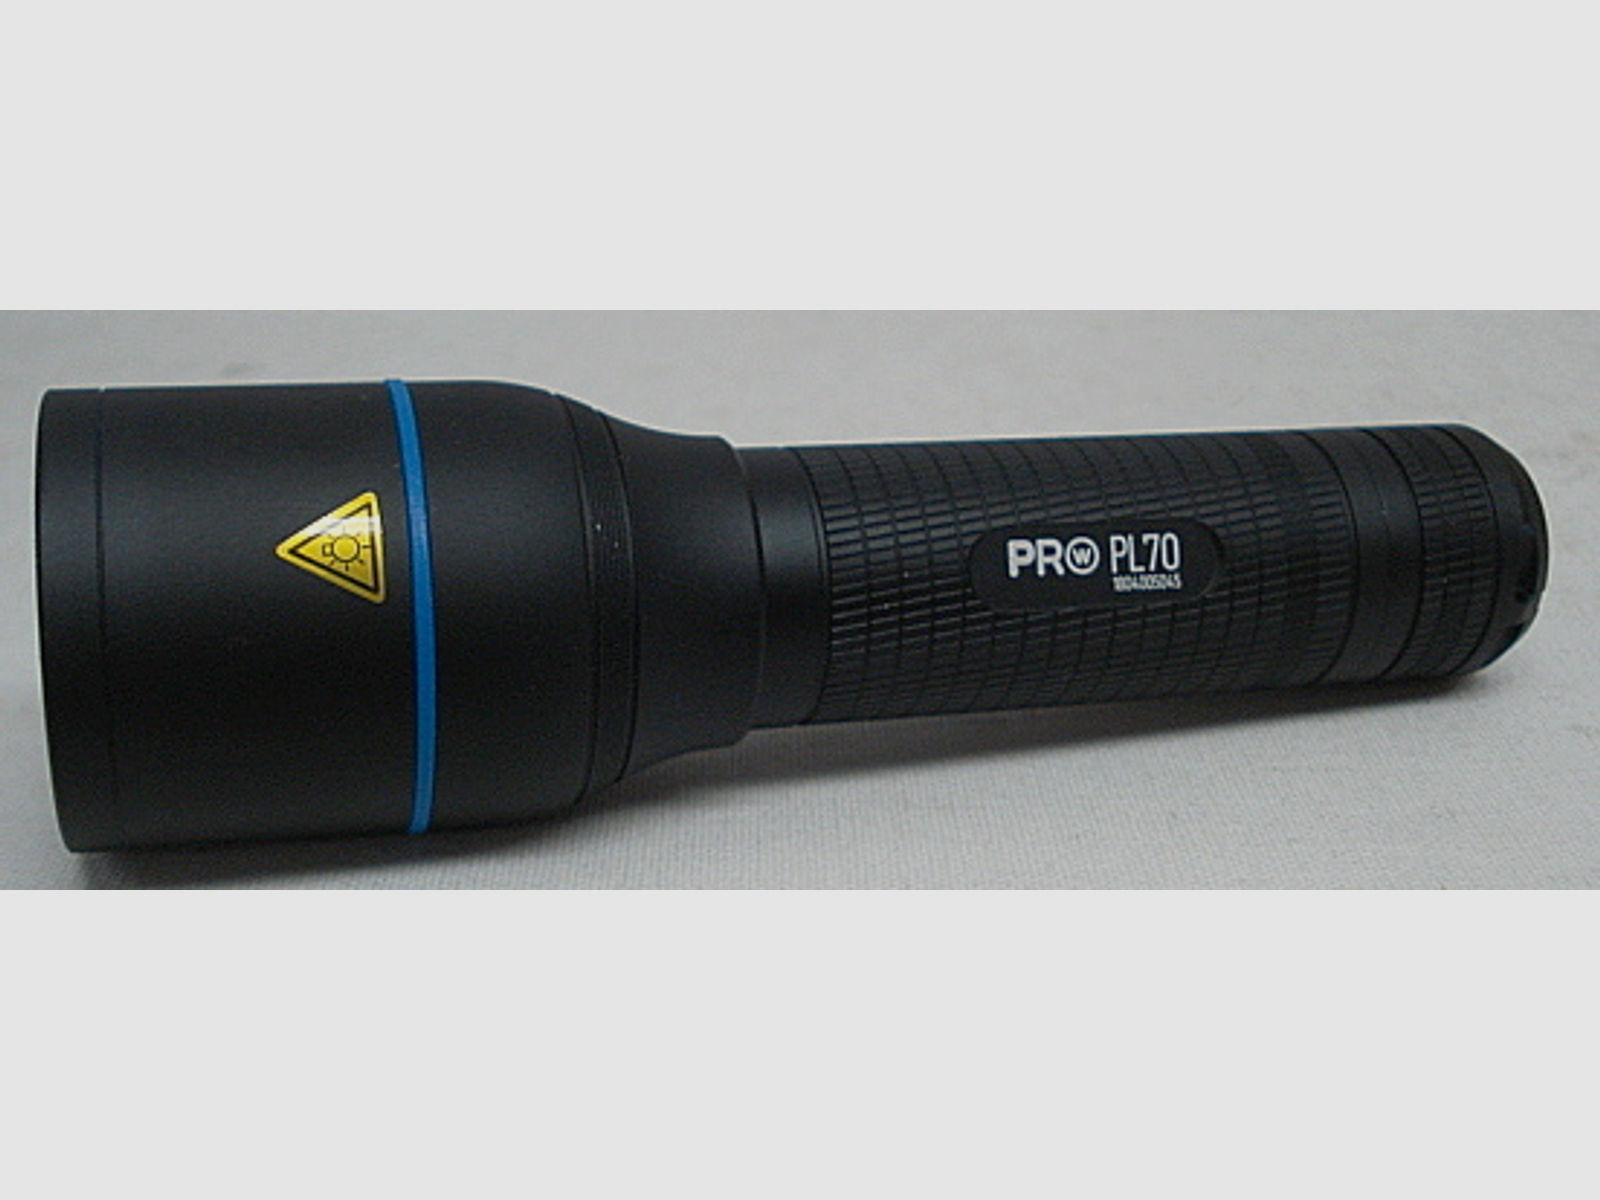 Pro PL70 - 935 Lumen - inkl. 2x CR123 Batterien